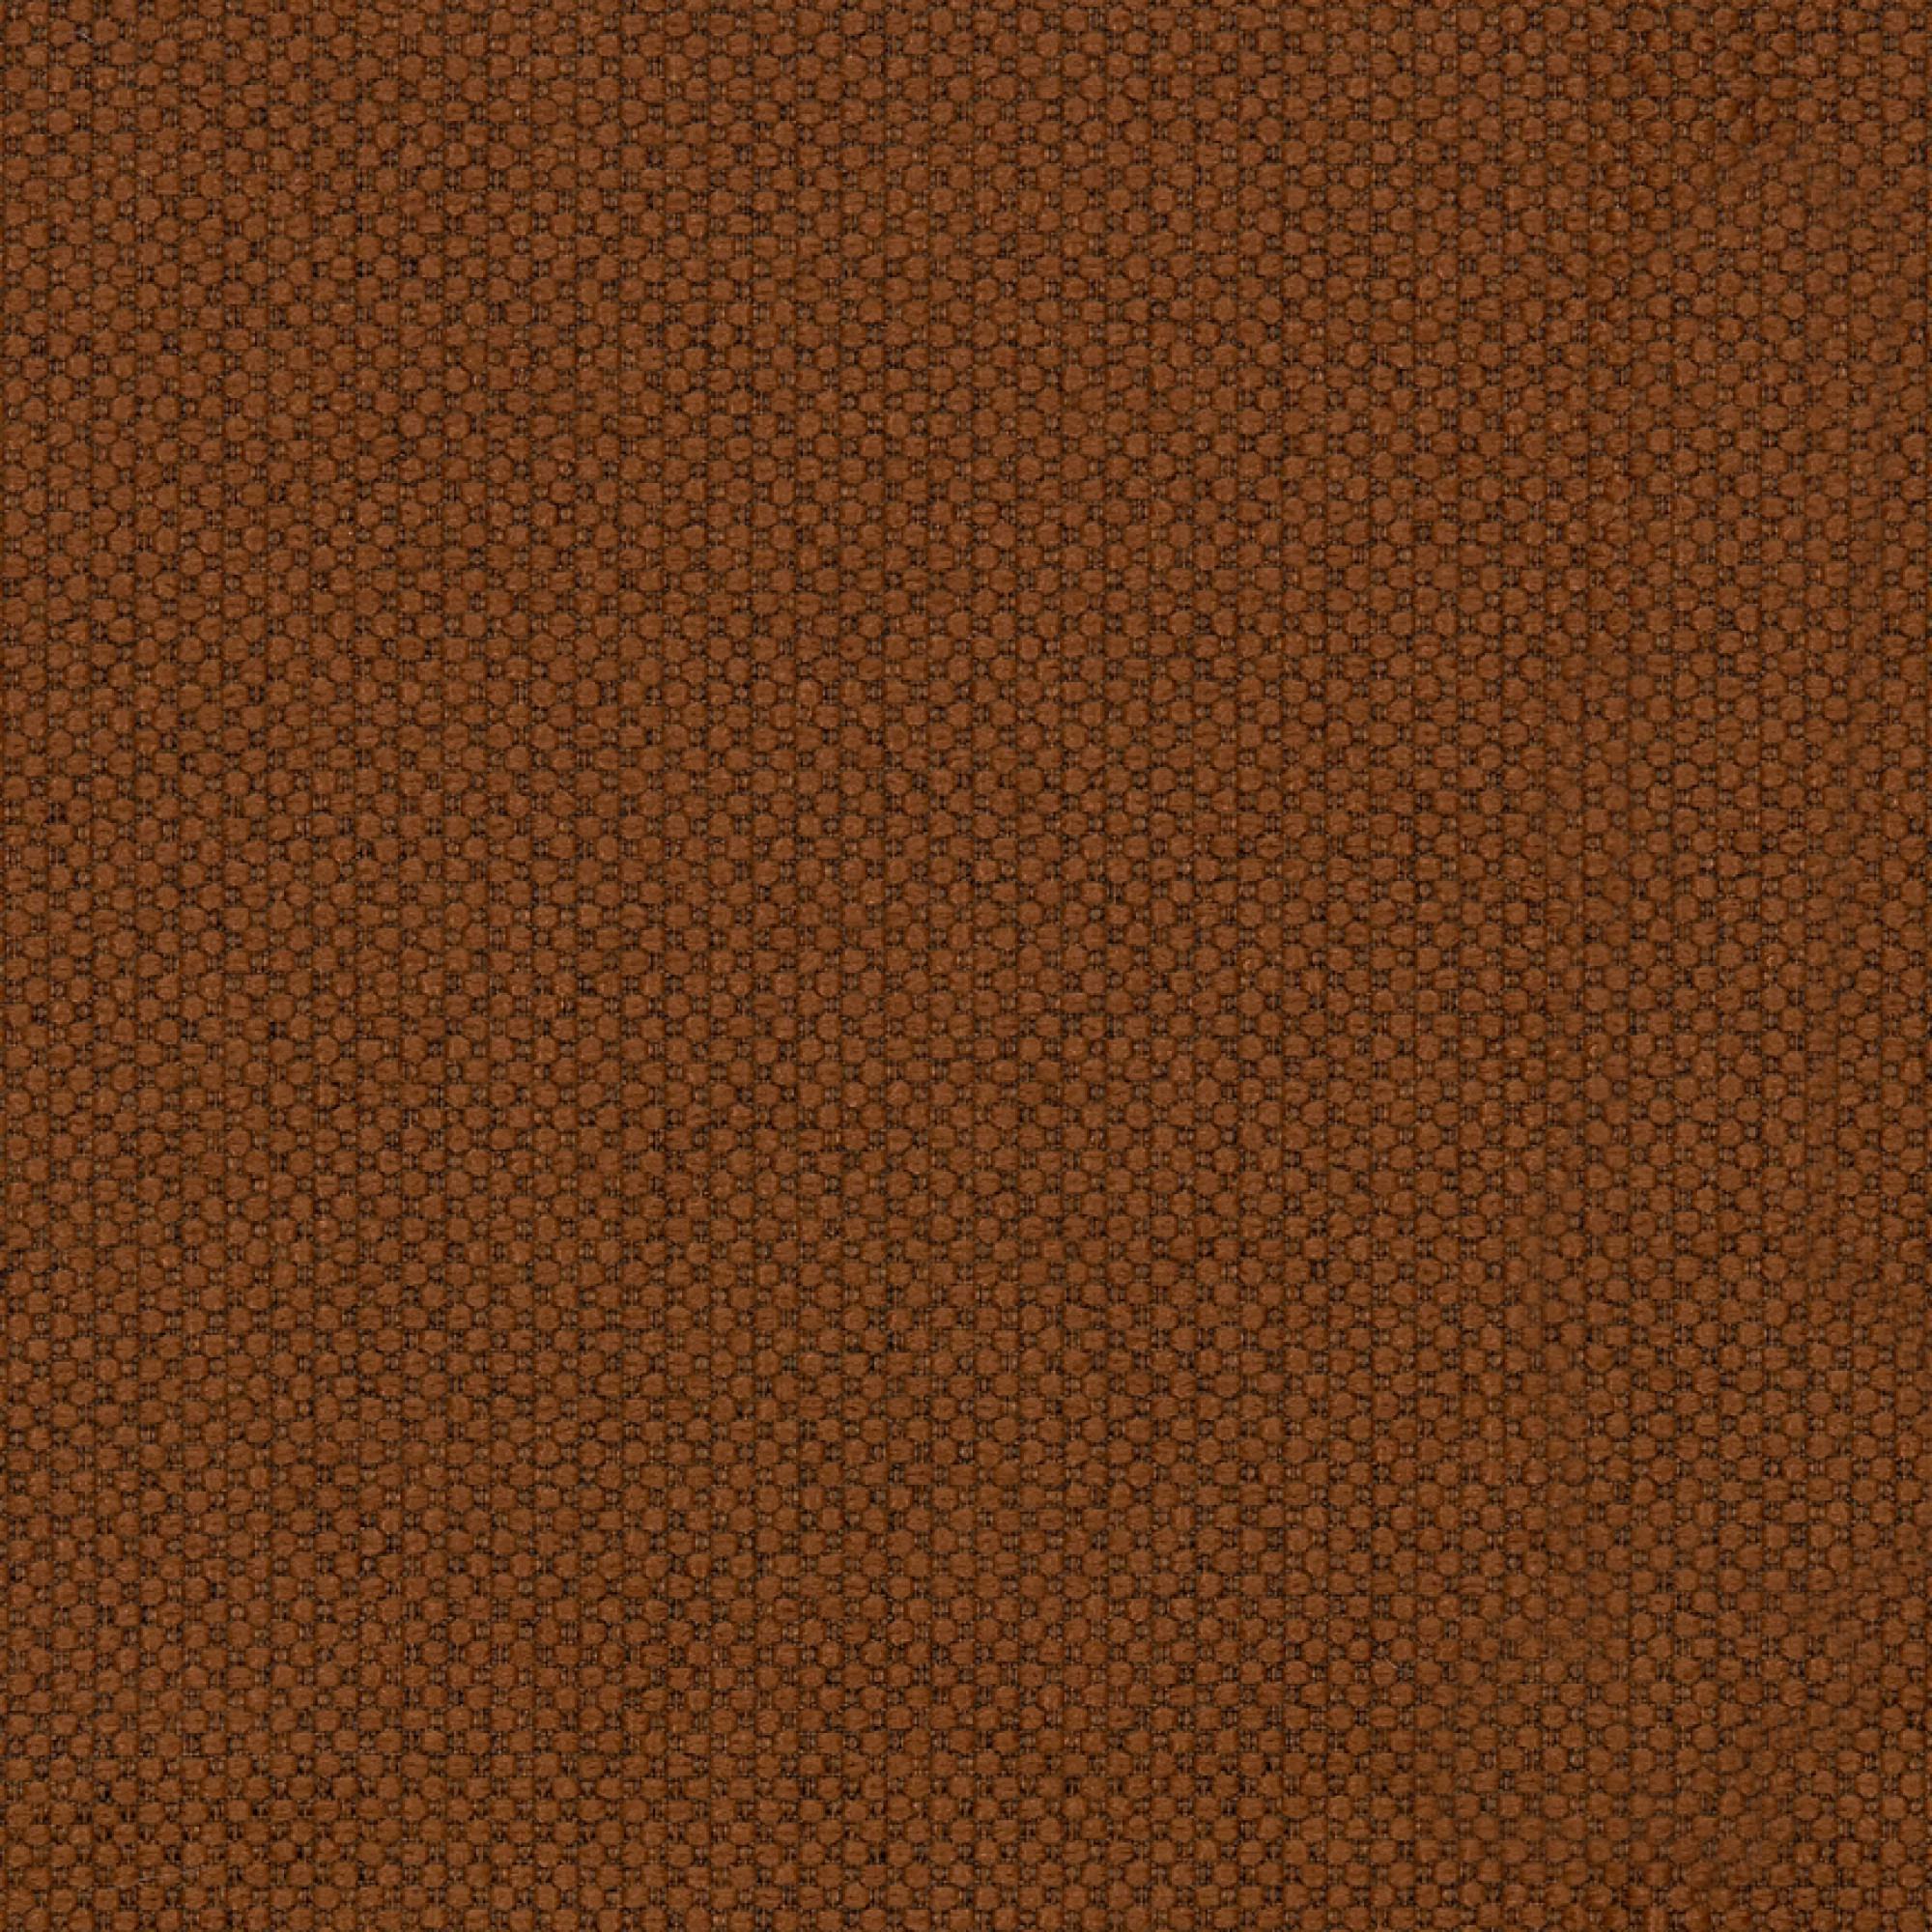 Fabric sample Merit 0033 brown